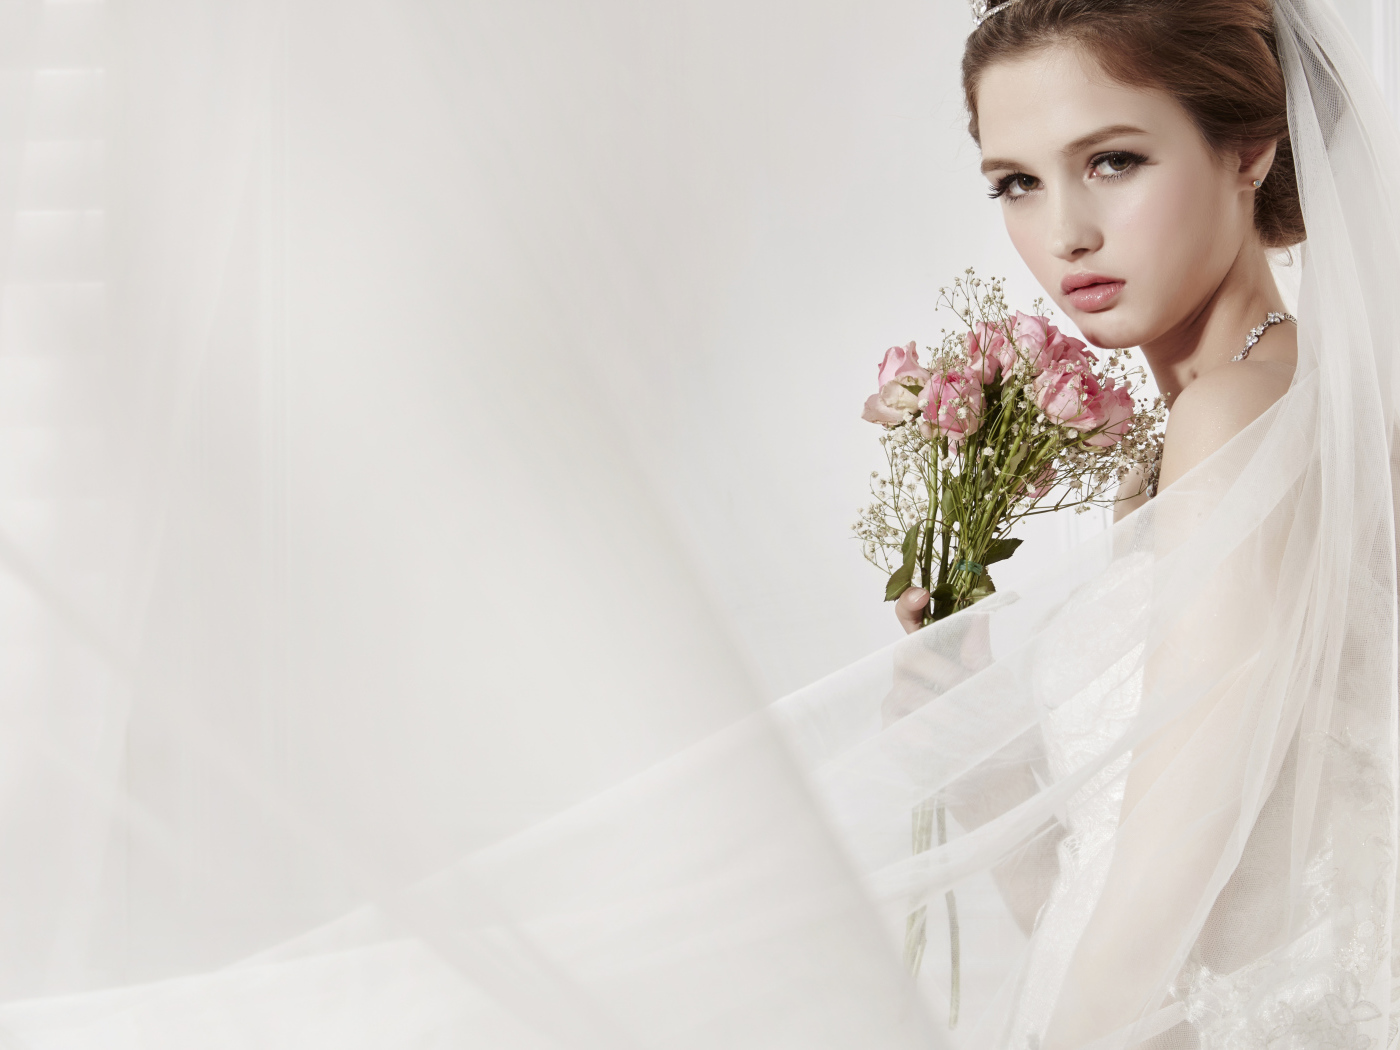 Красивая девушка невеста в свадебном платье с букетом роз 